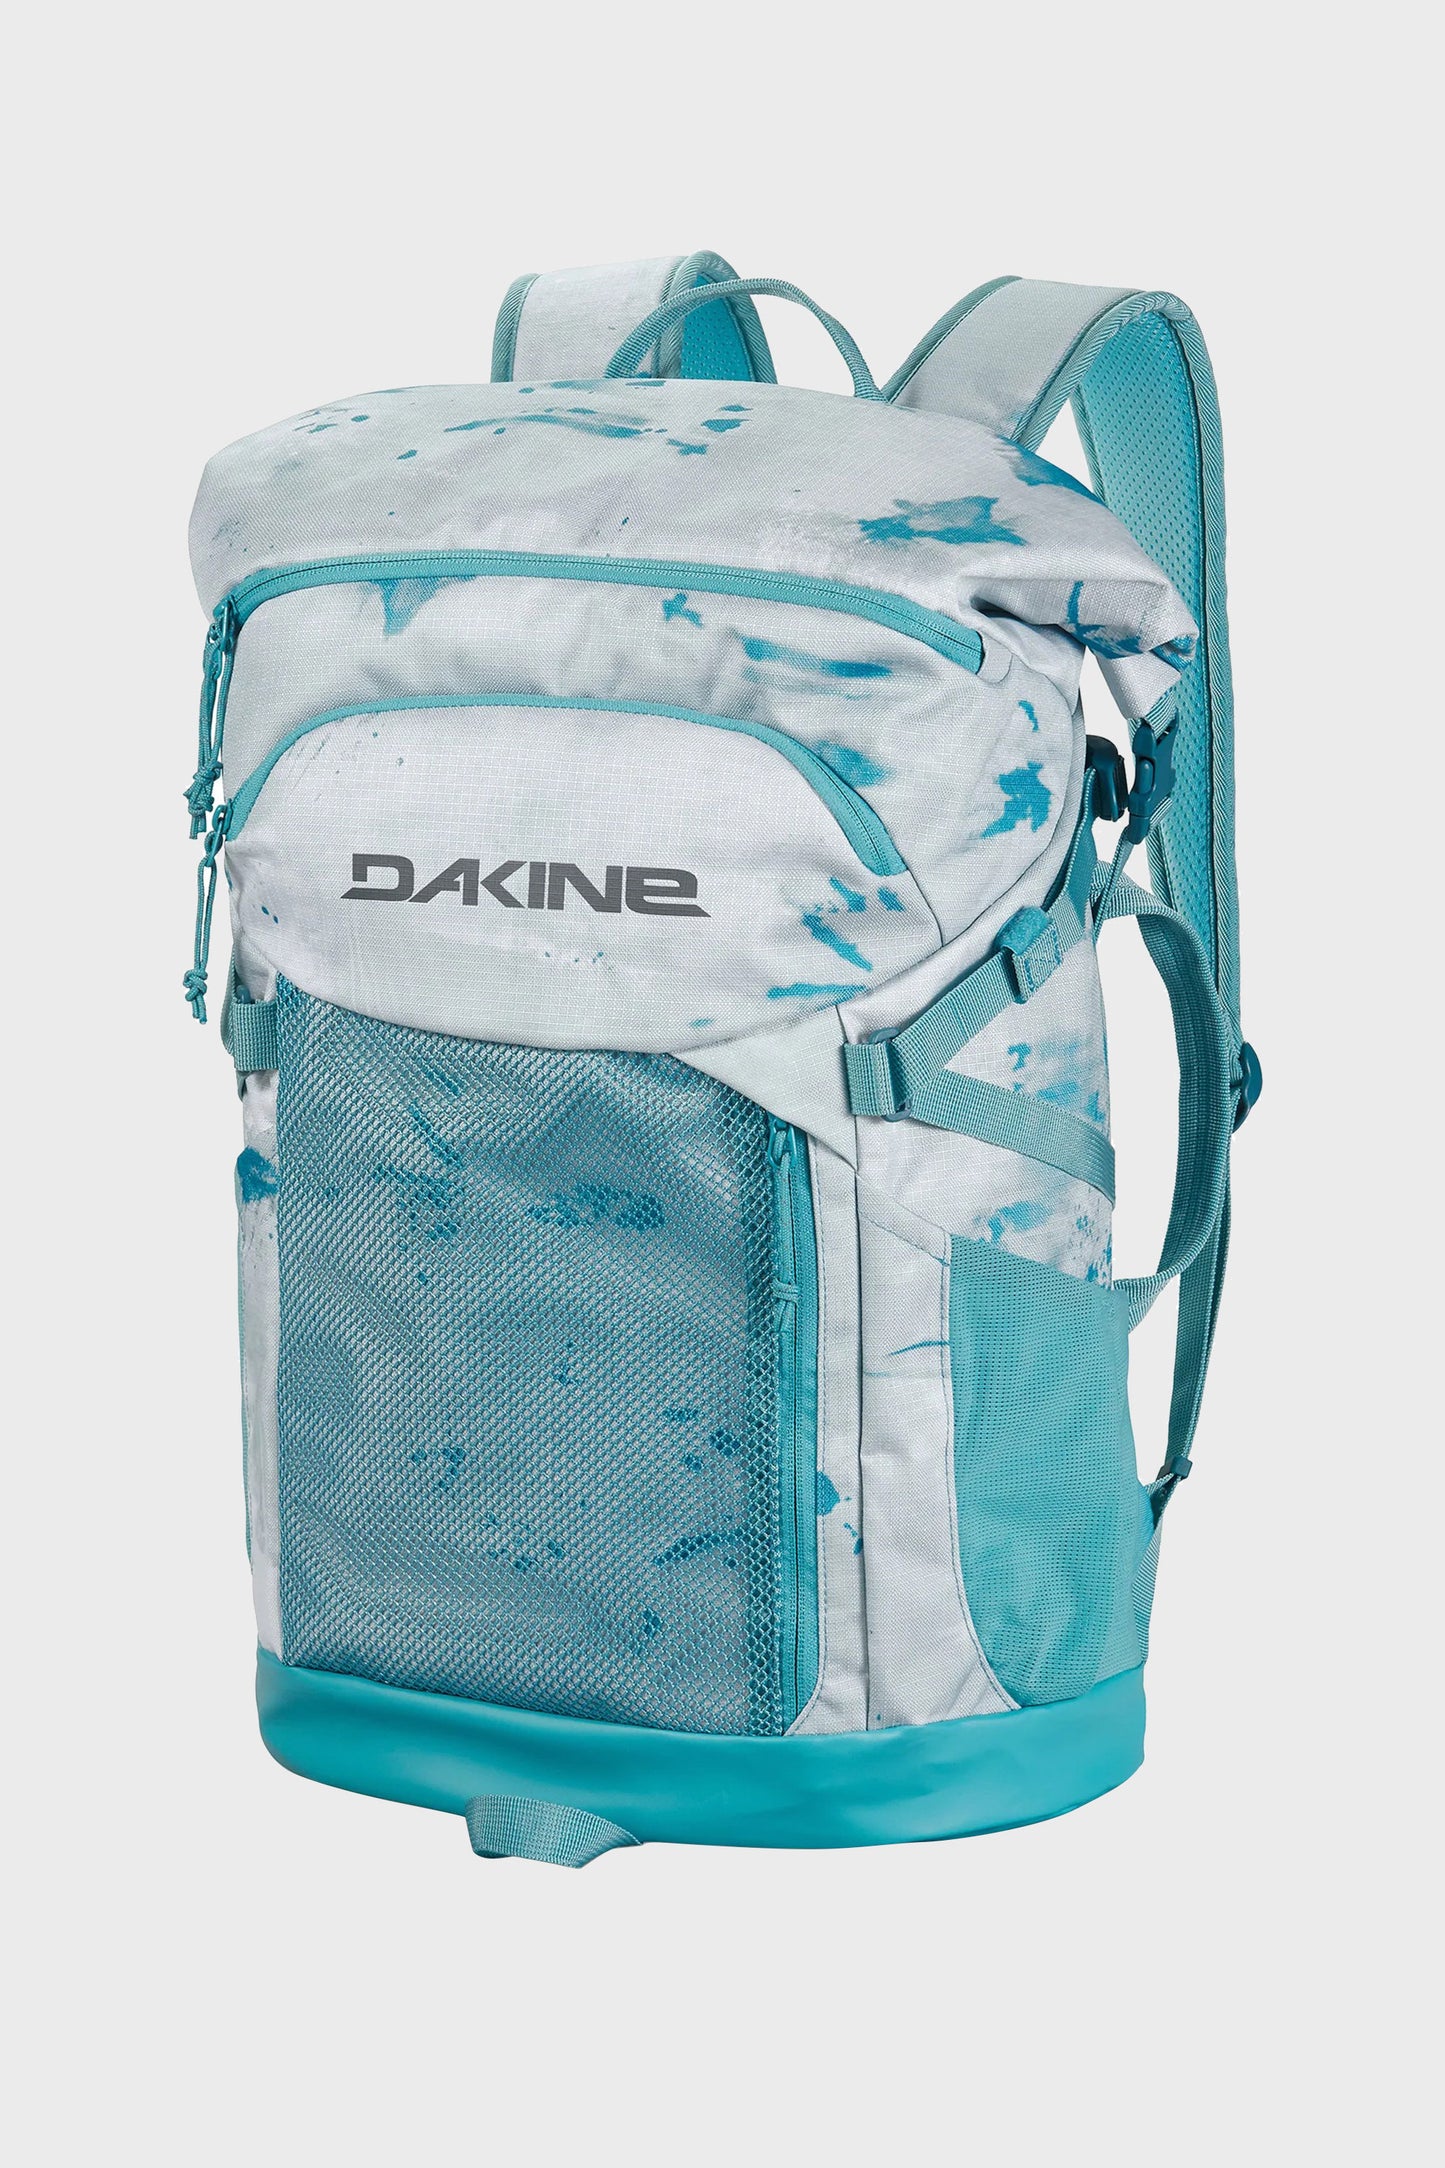 
                  
                       Pukas-Surf-Shop-Dakine-Backpack-Mission-Surf-Pack-30L
                  
                